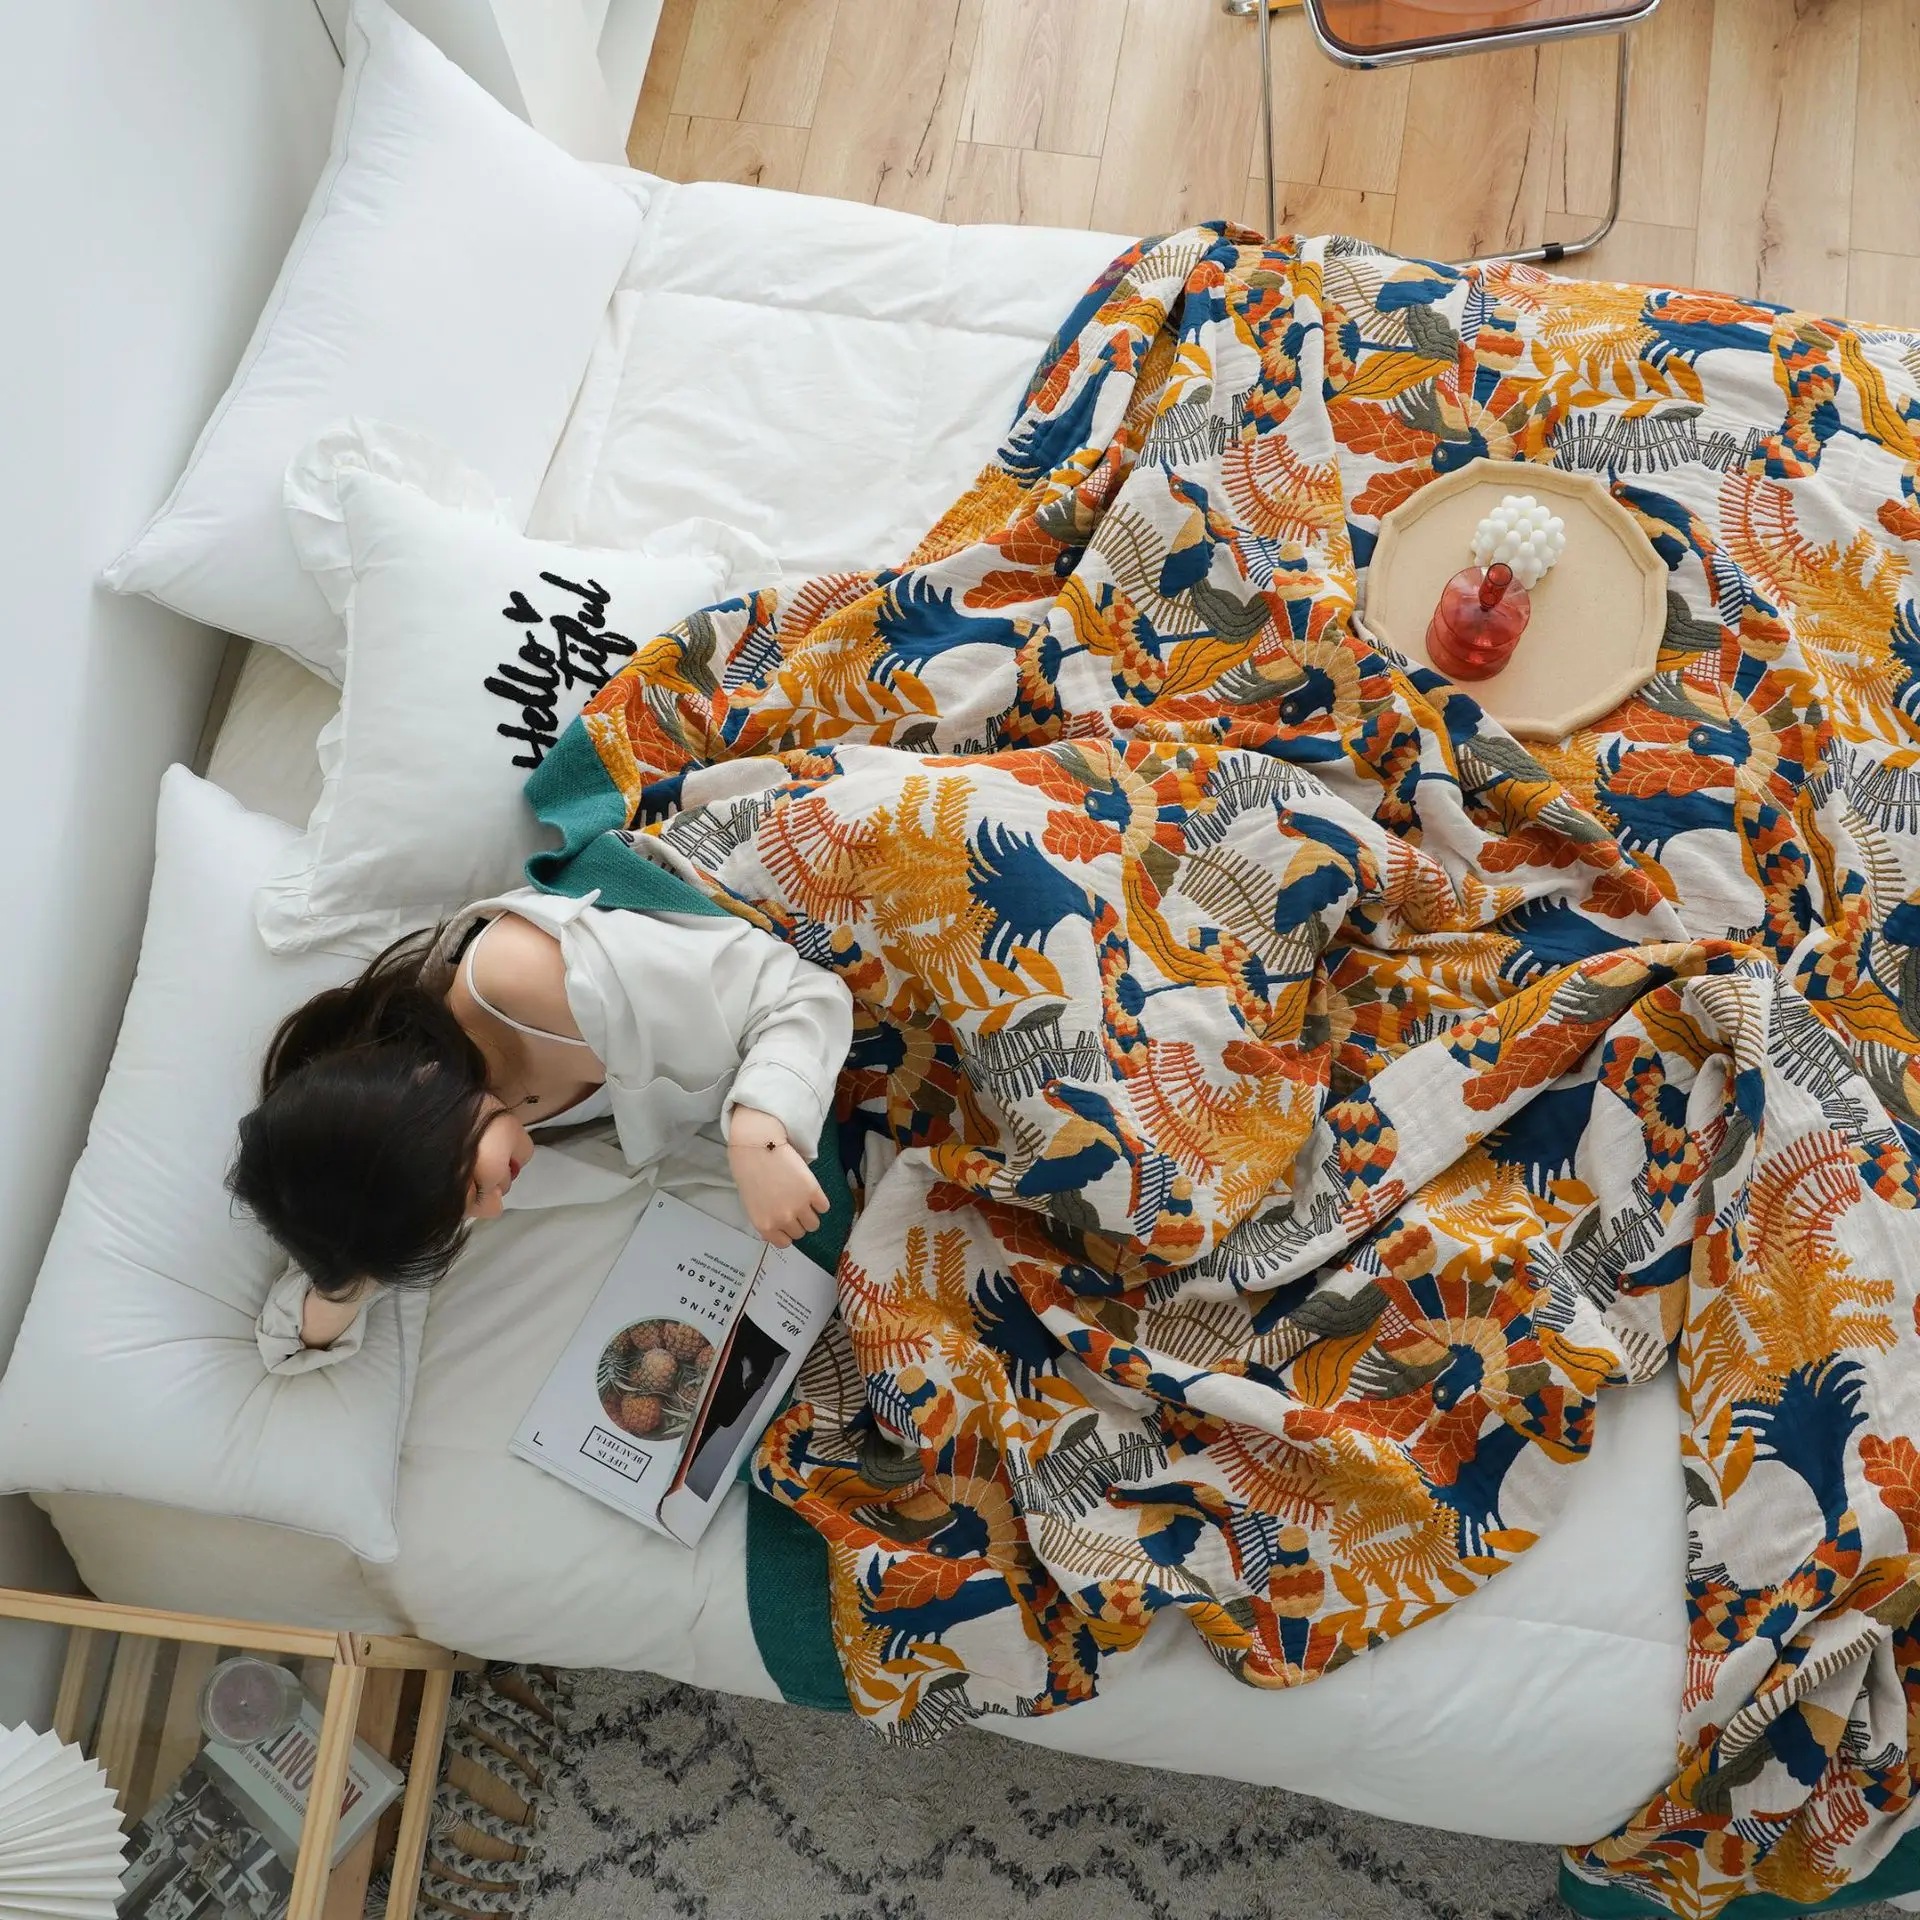 Скандинавские хлопчатобумажные одеяла, этническое одеяло для кондиционирования воздуха, простыня в стиле бохо, одеяла королевского размера, мягкое покрывало для отдыха, полотенце для дивана. 0